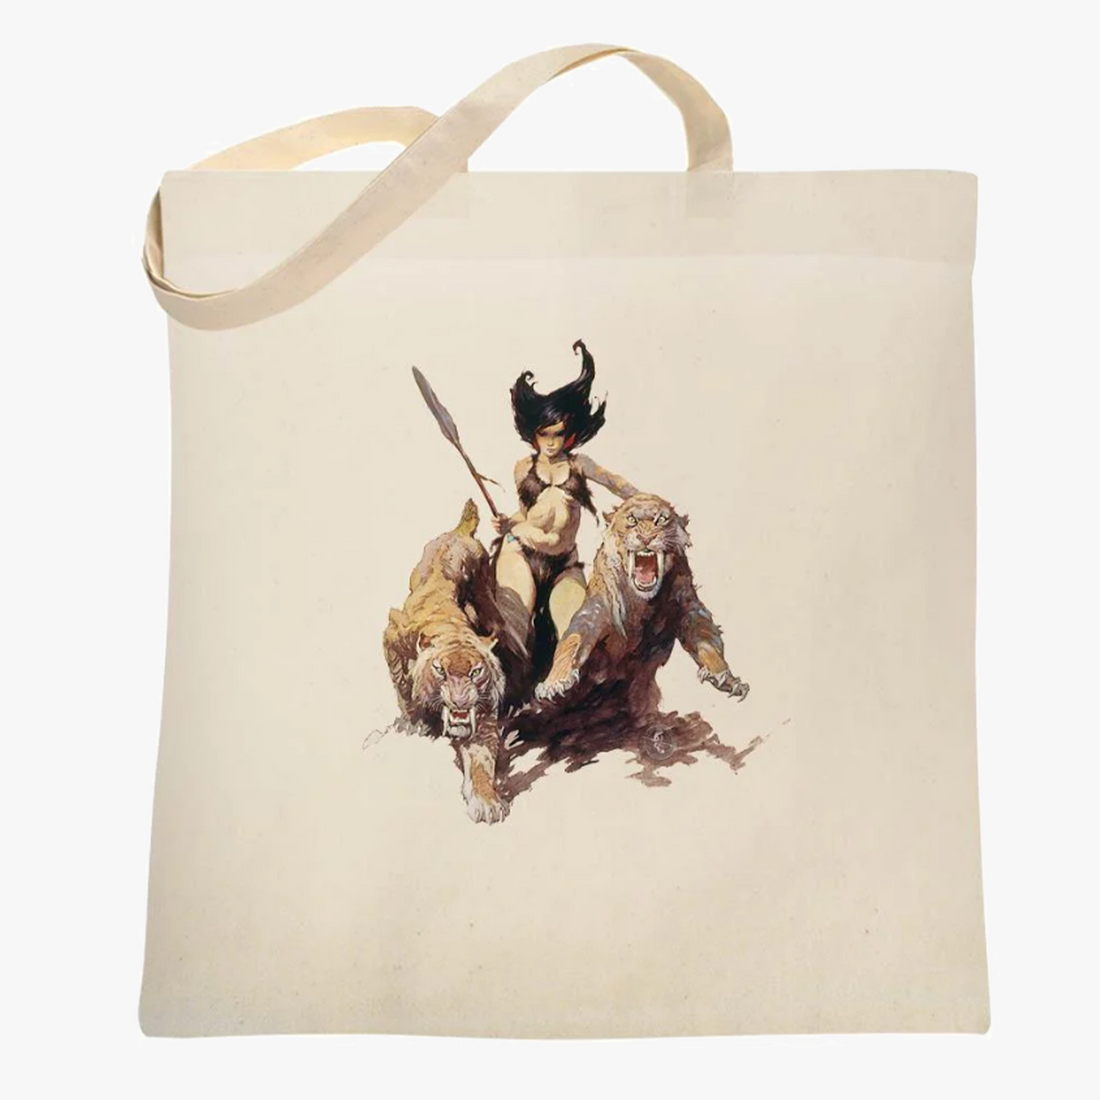 The Huntress Tote Bag